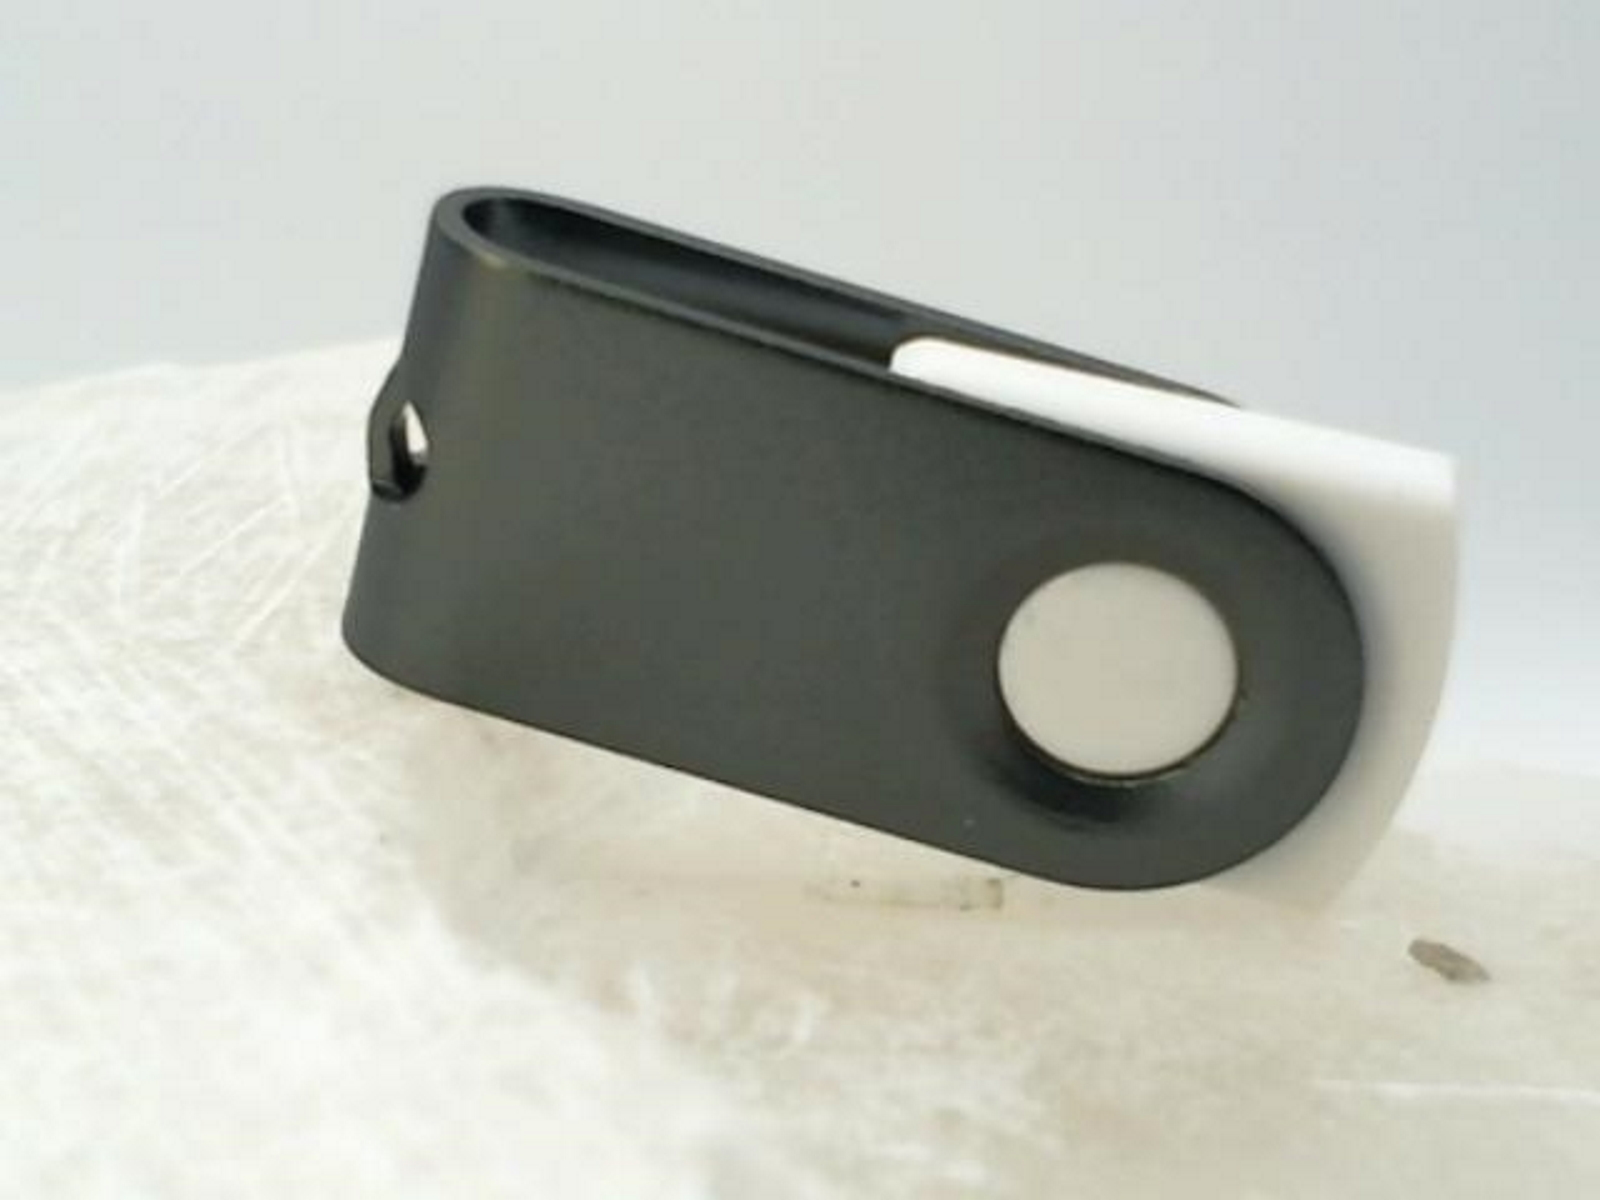 USB GB) ® 2 USB-Stick GERMANY (Weiß-Graumetall, MINI-SWIVEL